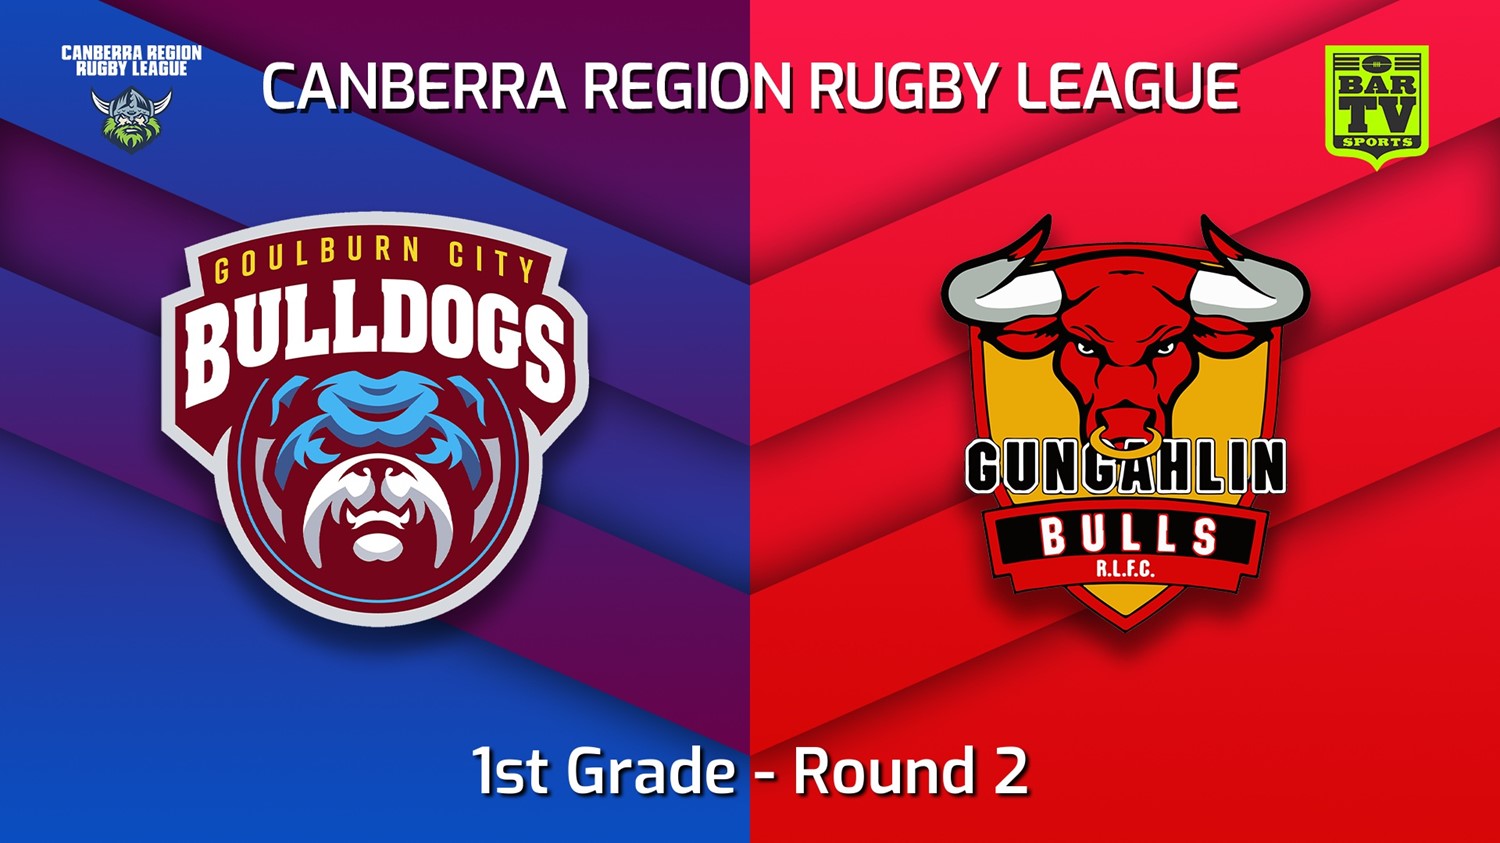 220409-Canberra Round 2 - 1st Grade - Goulburn City Bulldogs v Gungahlin Bulls Slate Image